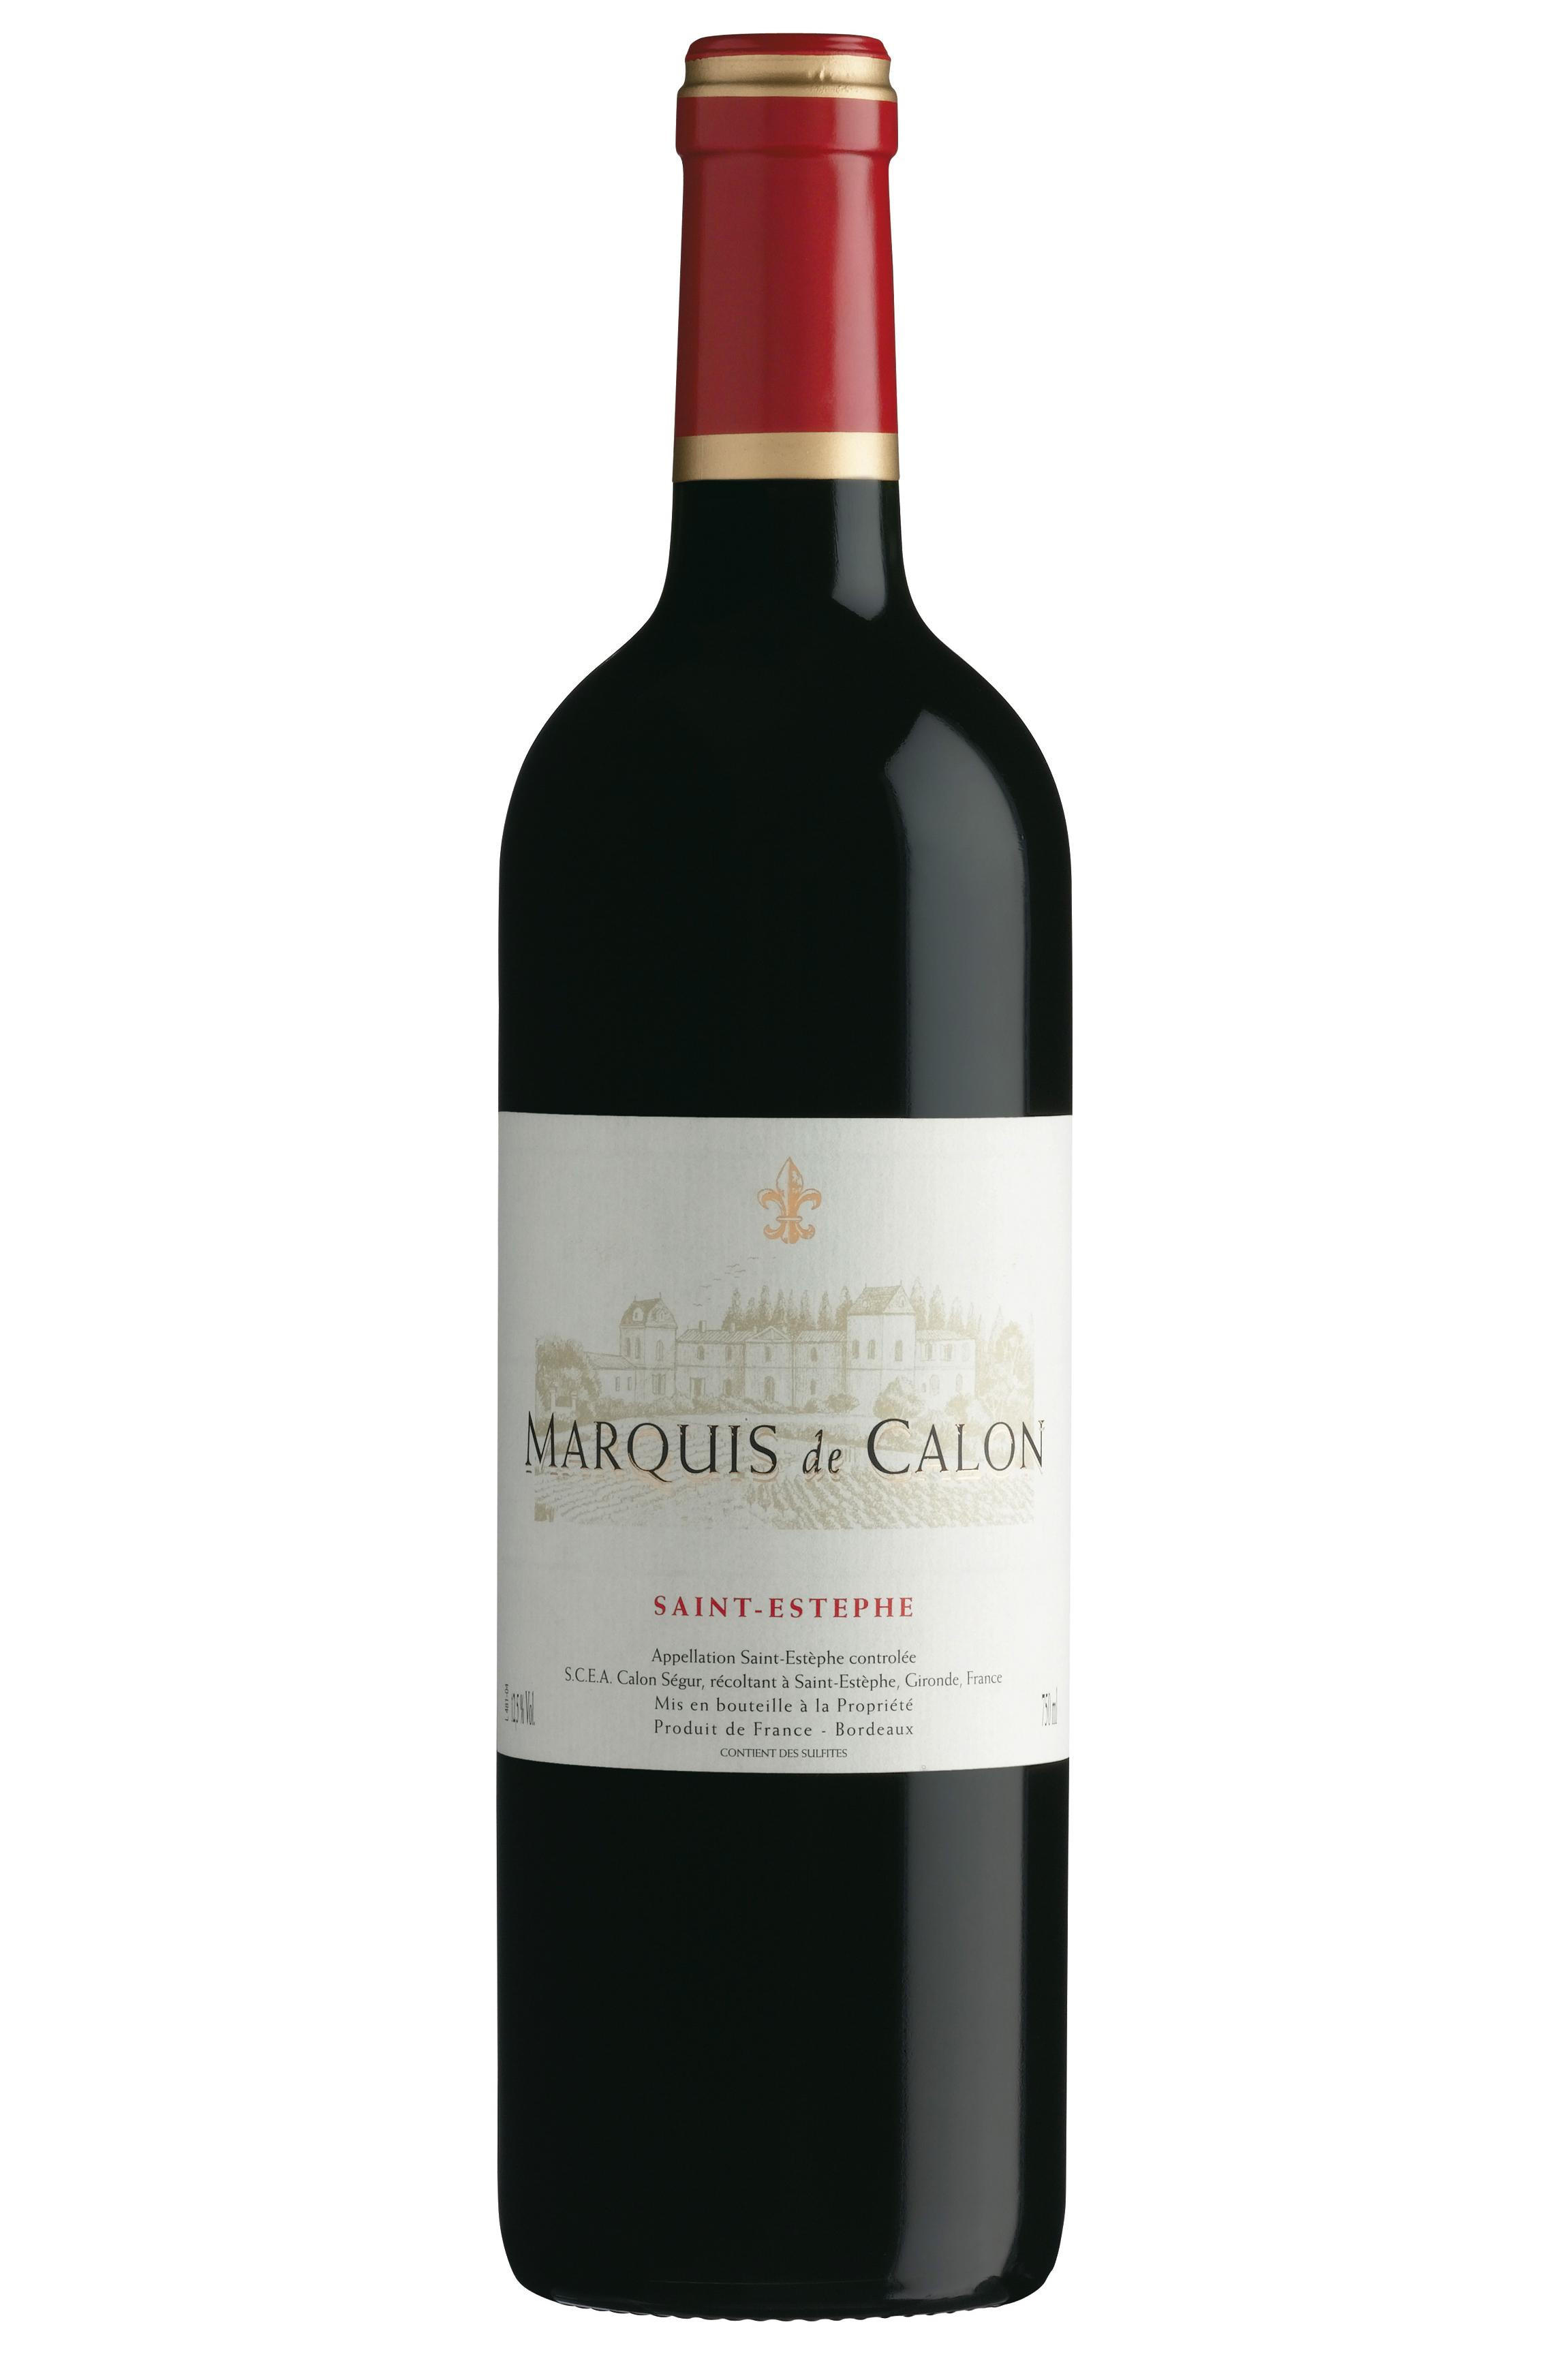 Explore the Wine range of Chateau Calon Segur - Berry Bros. & Rudd